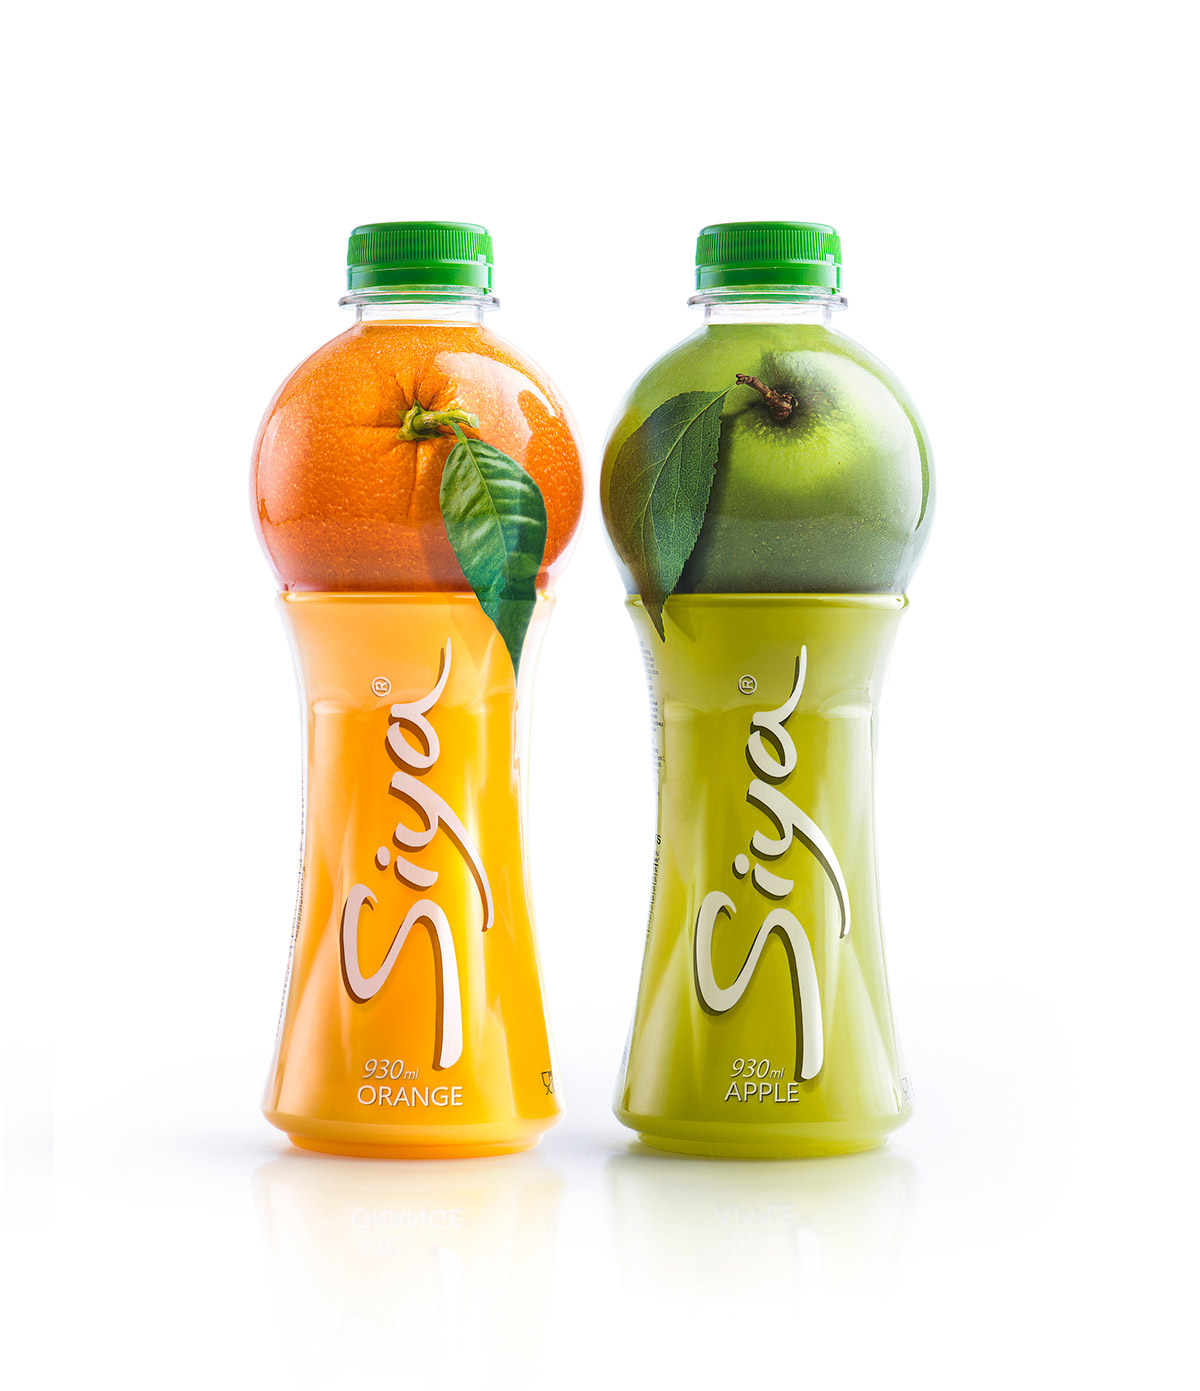 siya果汁系列创意包装欣赏,喝完舍不得扔的饮料瓶!